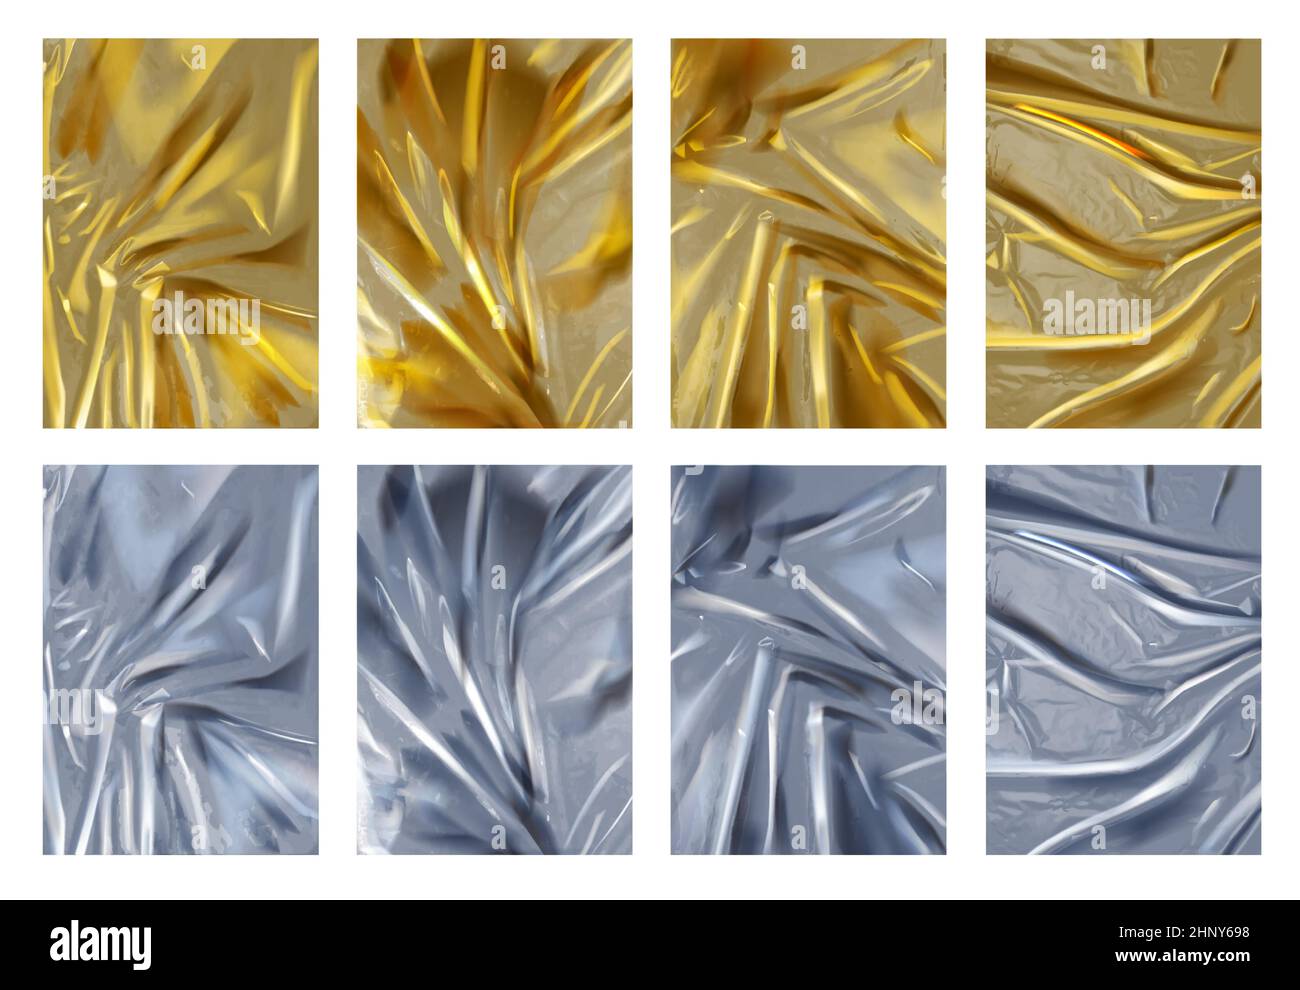 Realistische Textur aus zerknittert silbernen und goldenen Folienblättern. 3D glänzendes Aluminium- und Goldmaterial mit Falten. Luxuriöser Hintergrund-Vektorsatz. Illustratio Stock Vektor